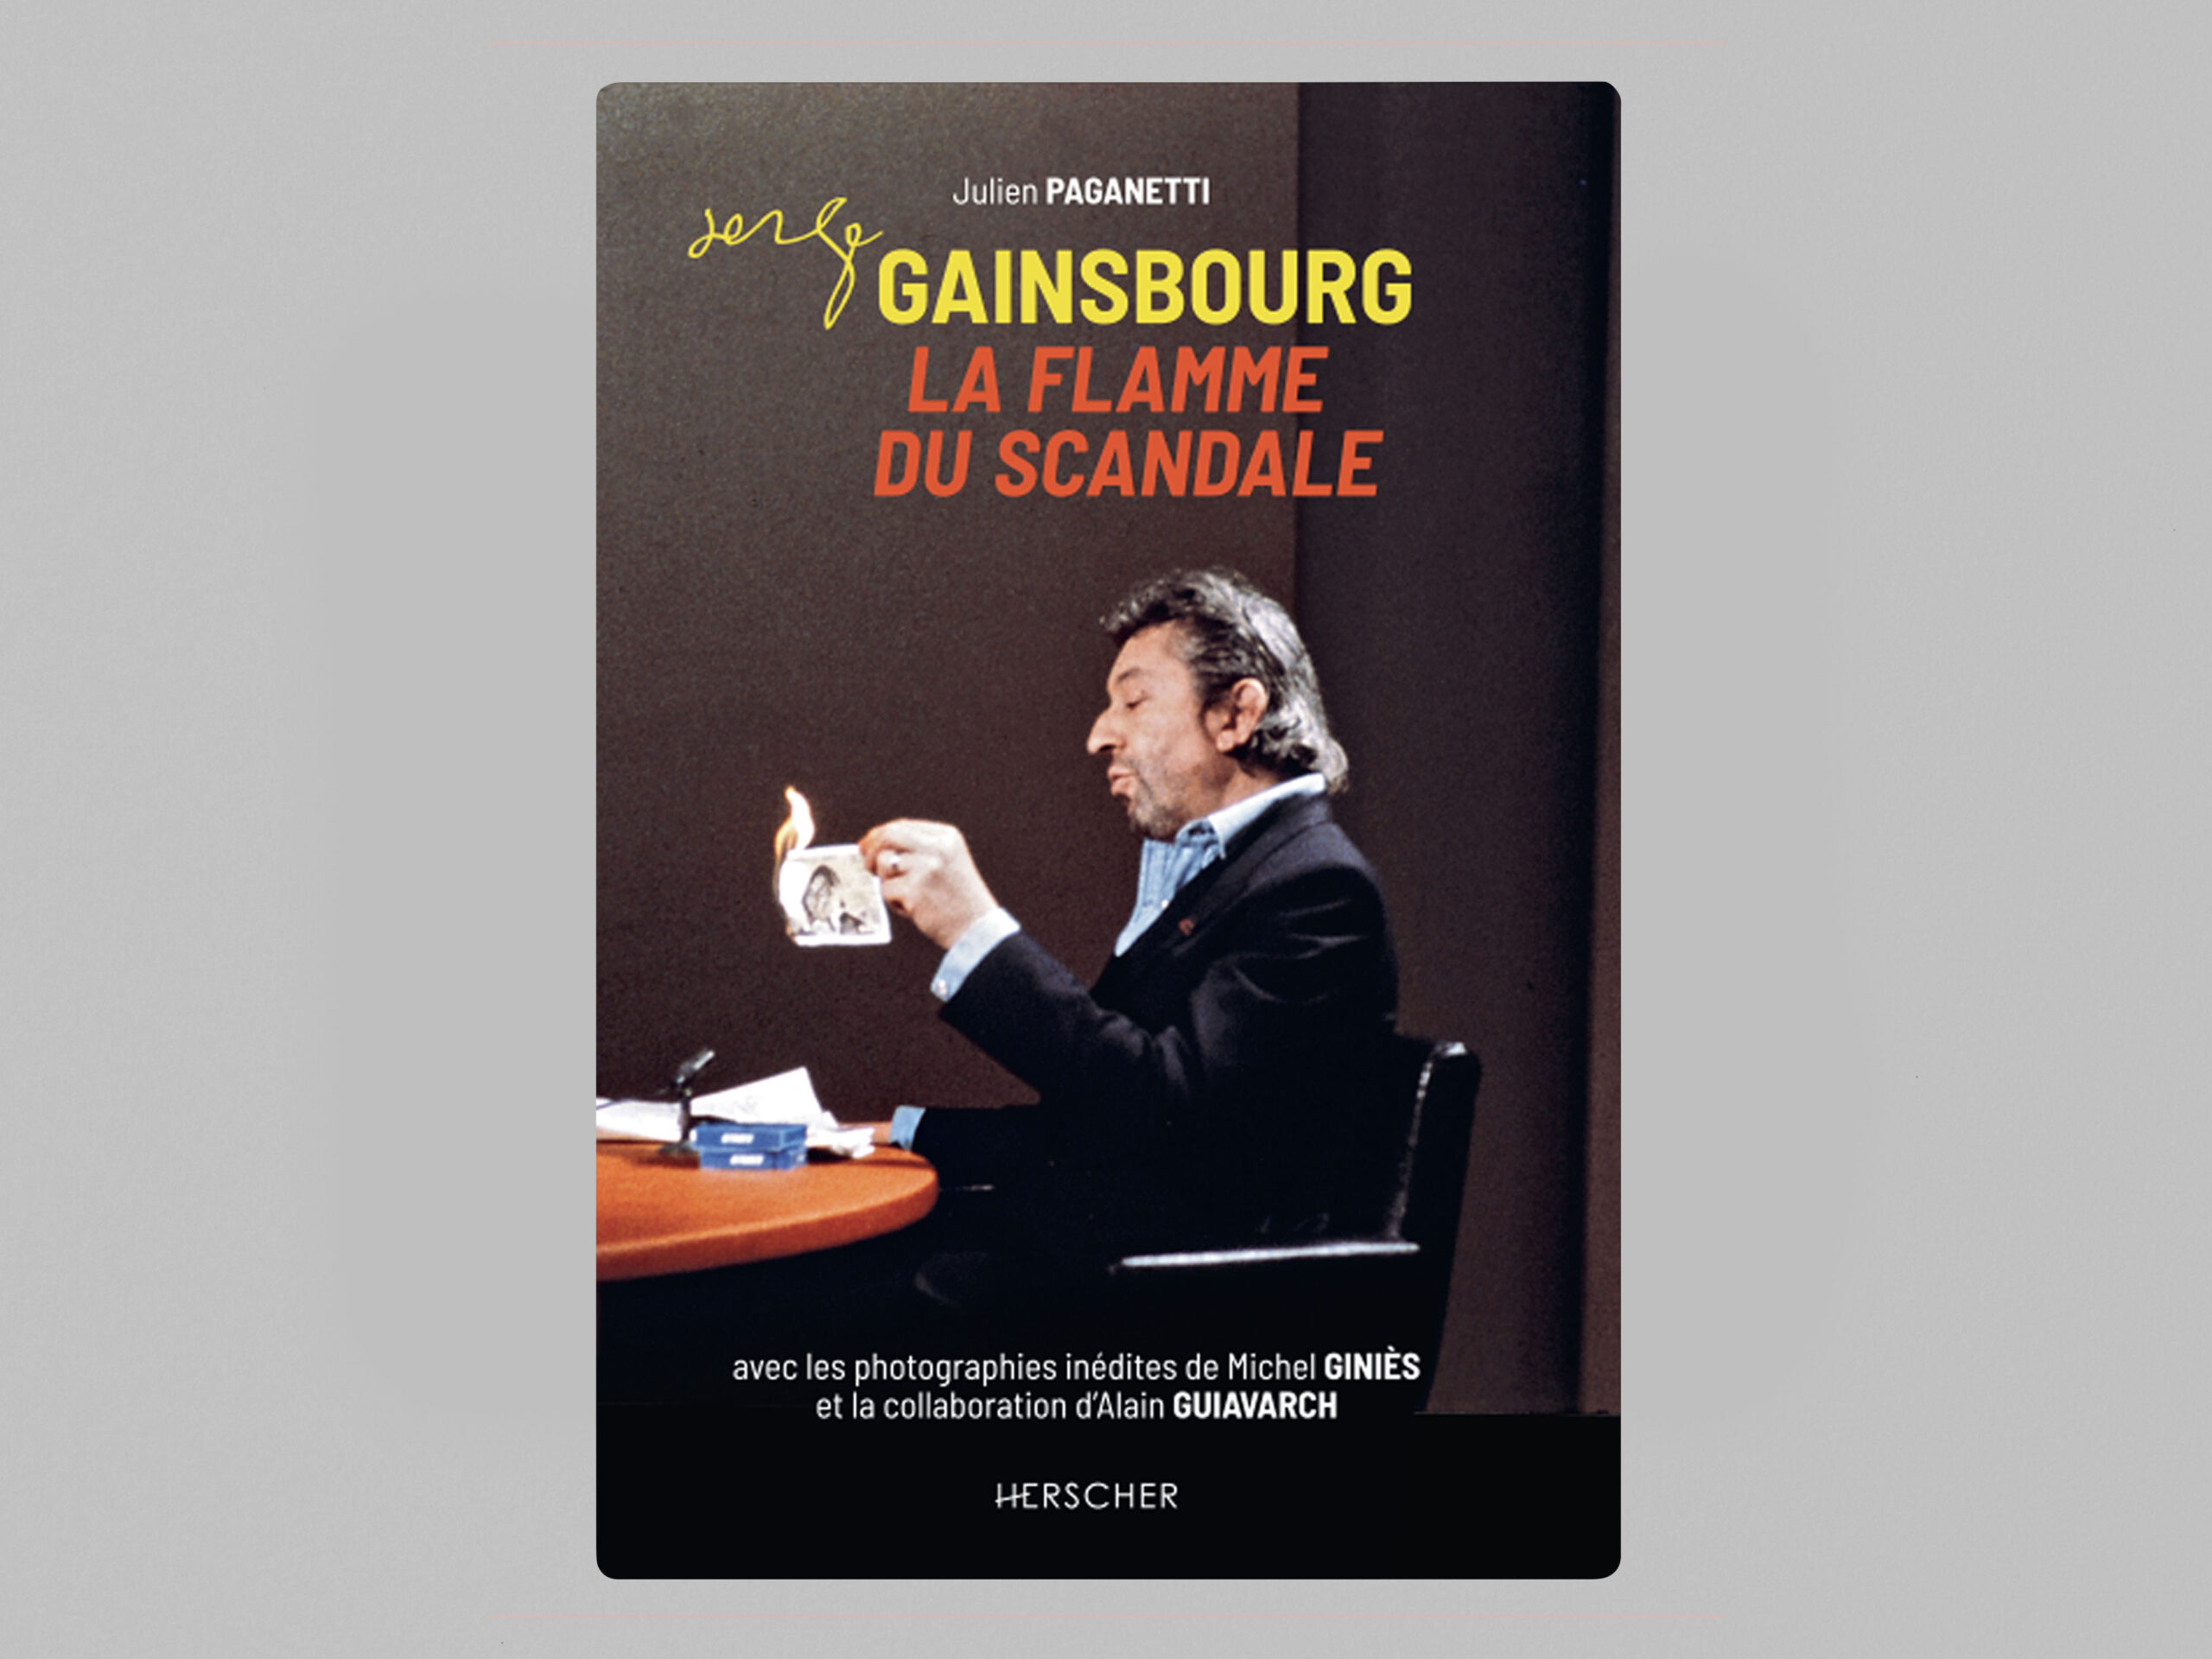 Gainsbourg_herscher_couv_mockup copie